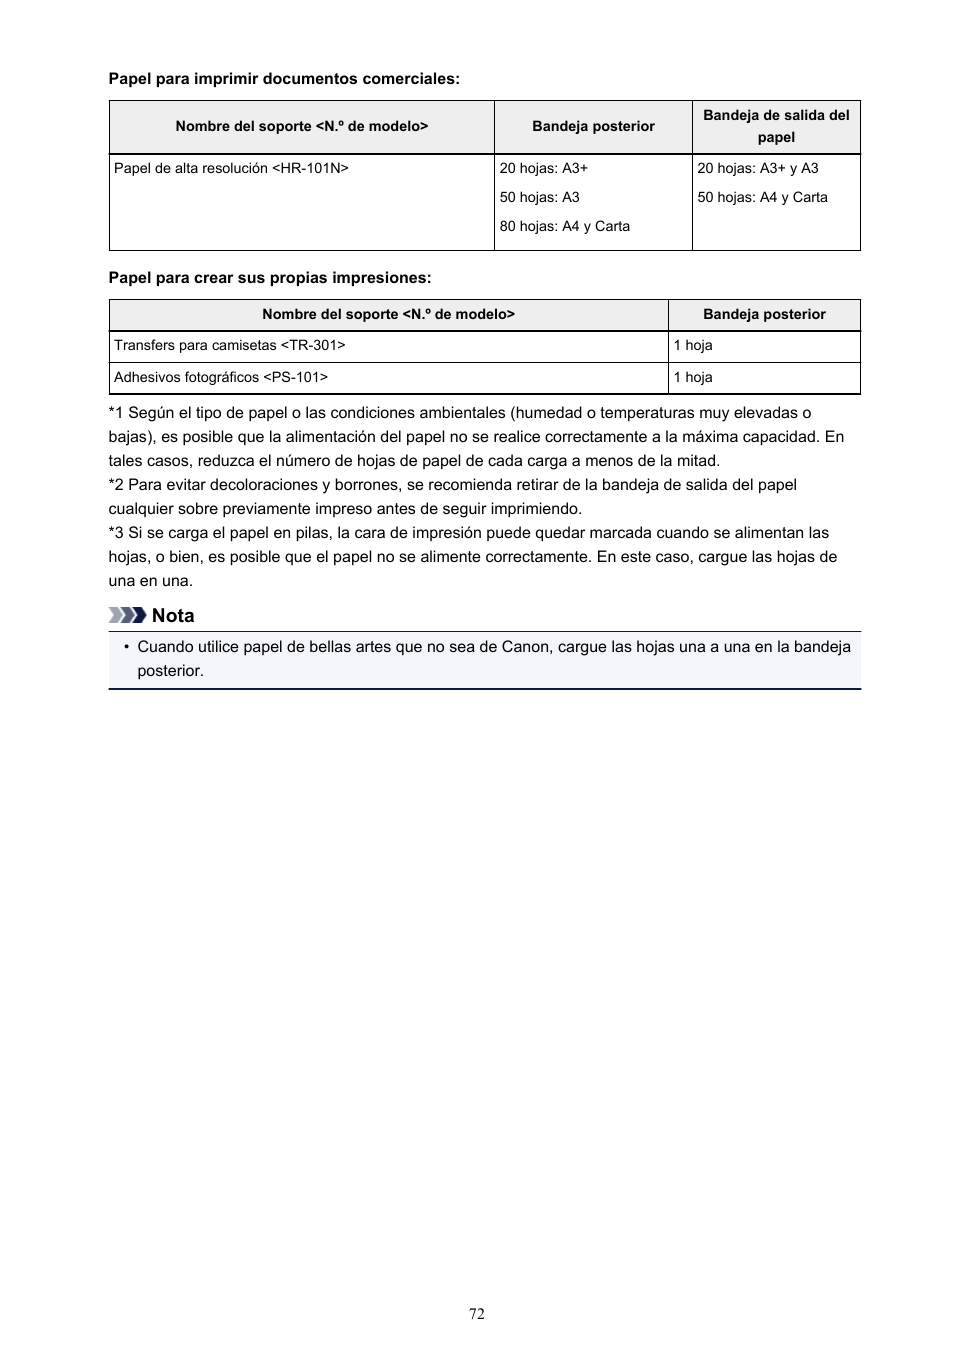 Papel normal (incluido el papel reciclado), Gp-601, Pp-201 | Sg-201, Nota | Canon PIXMA iP8750 Manual del usuario | Página 72 / 421